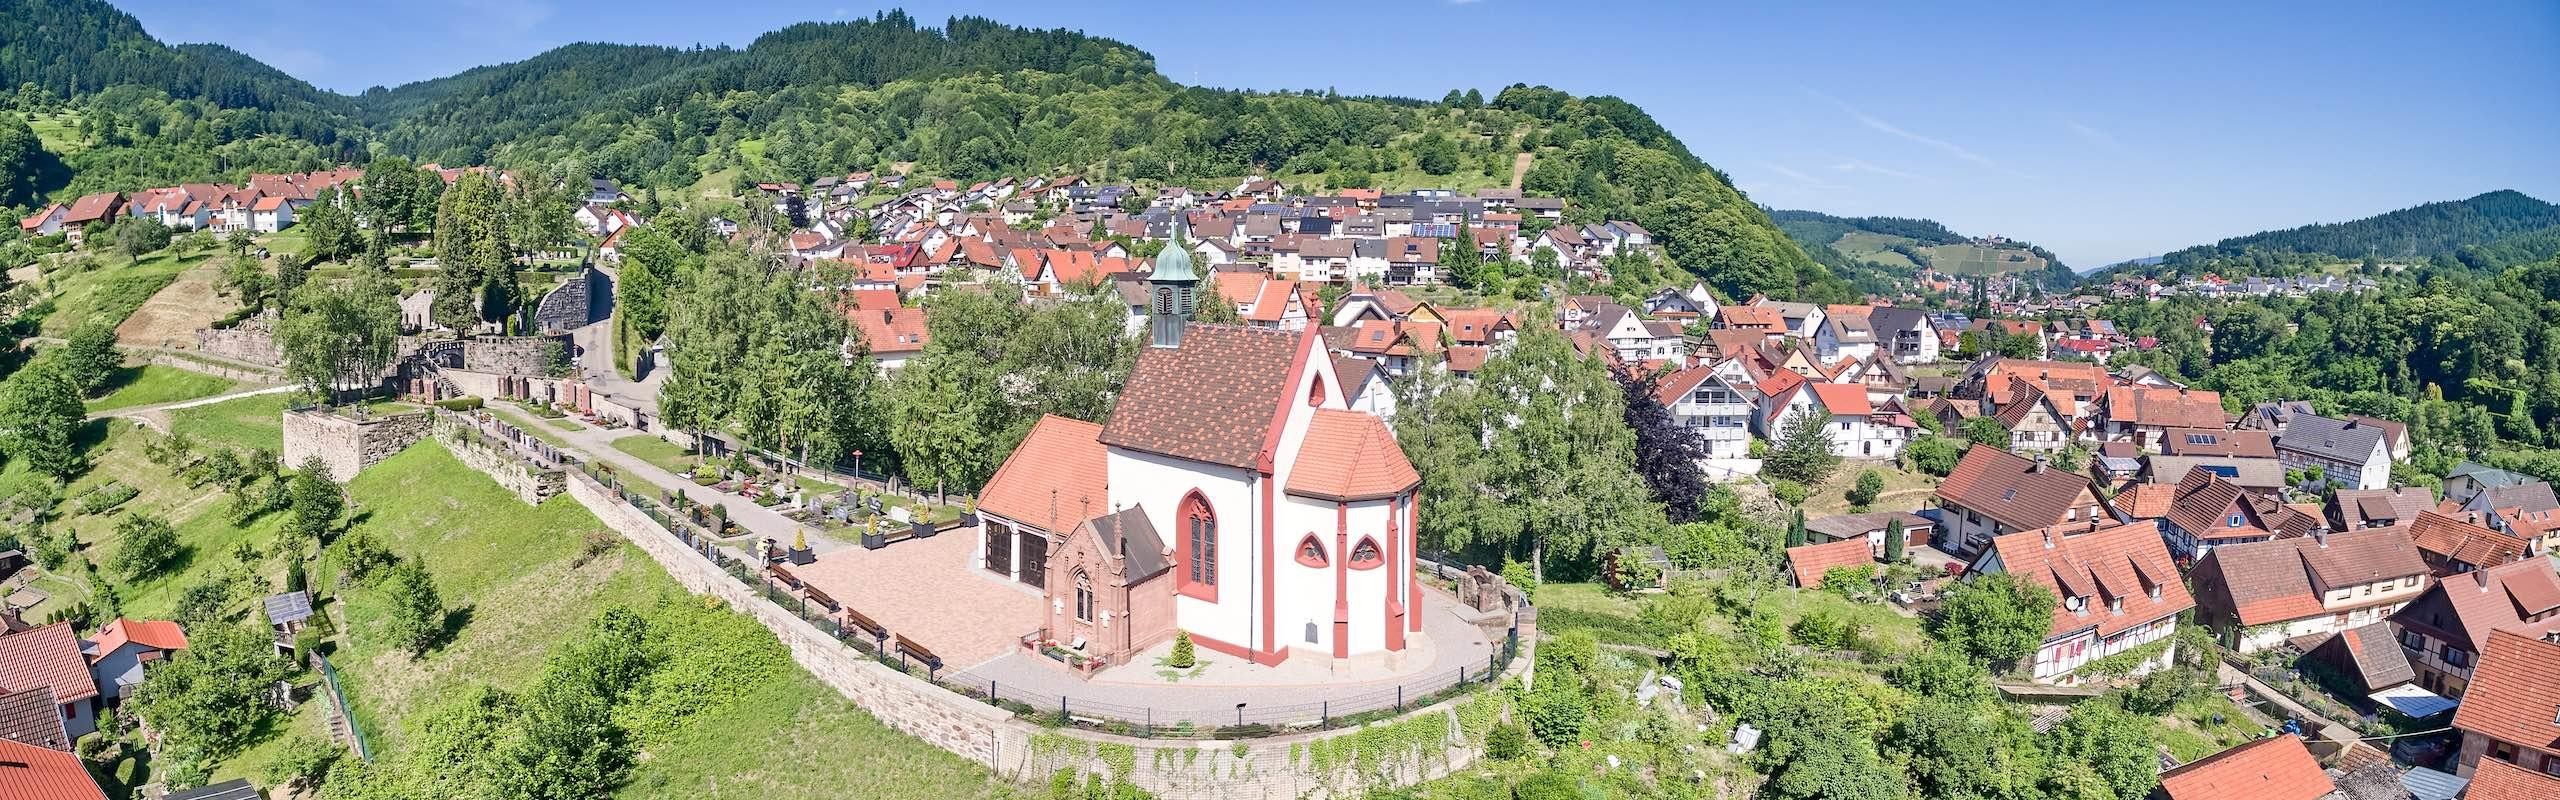 Das Bild zeigt eine Kirche und umliegende Häuser aus der Vogelperspektive